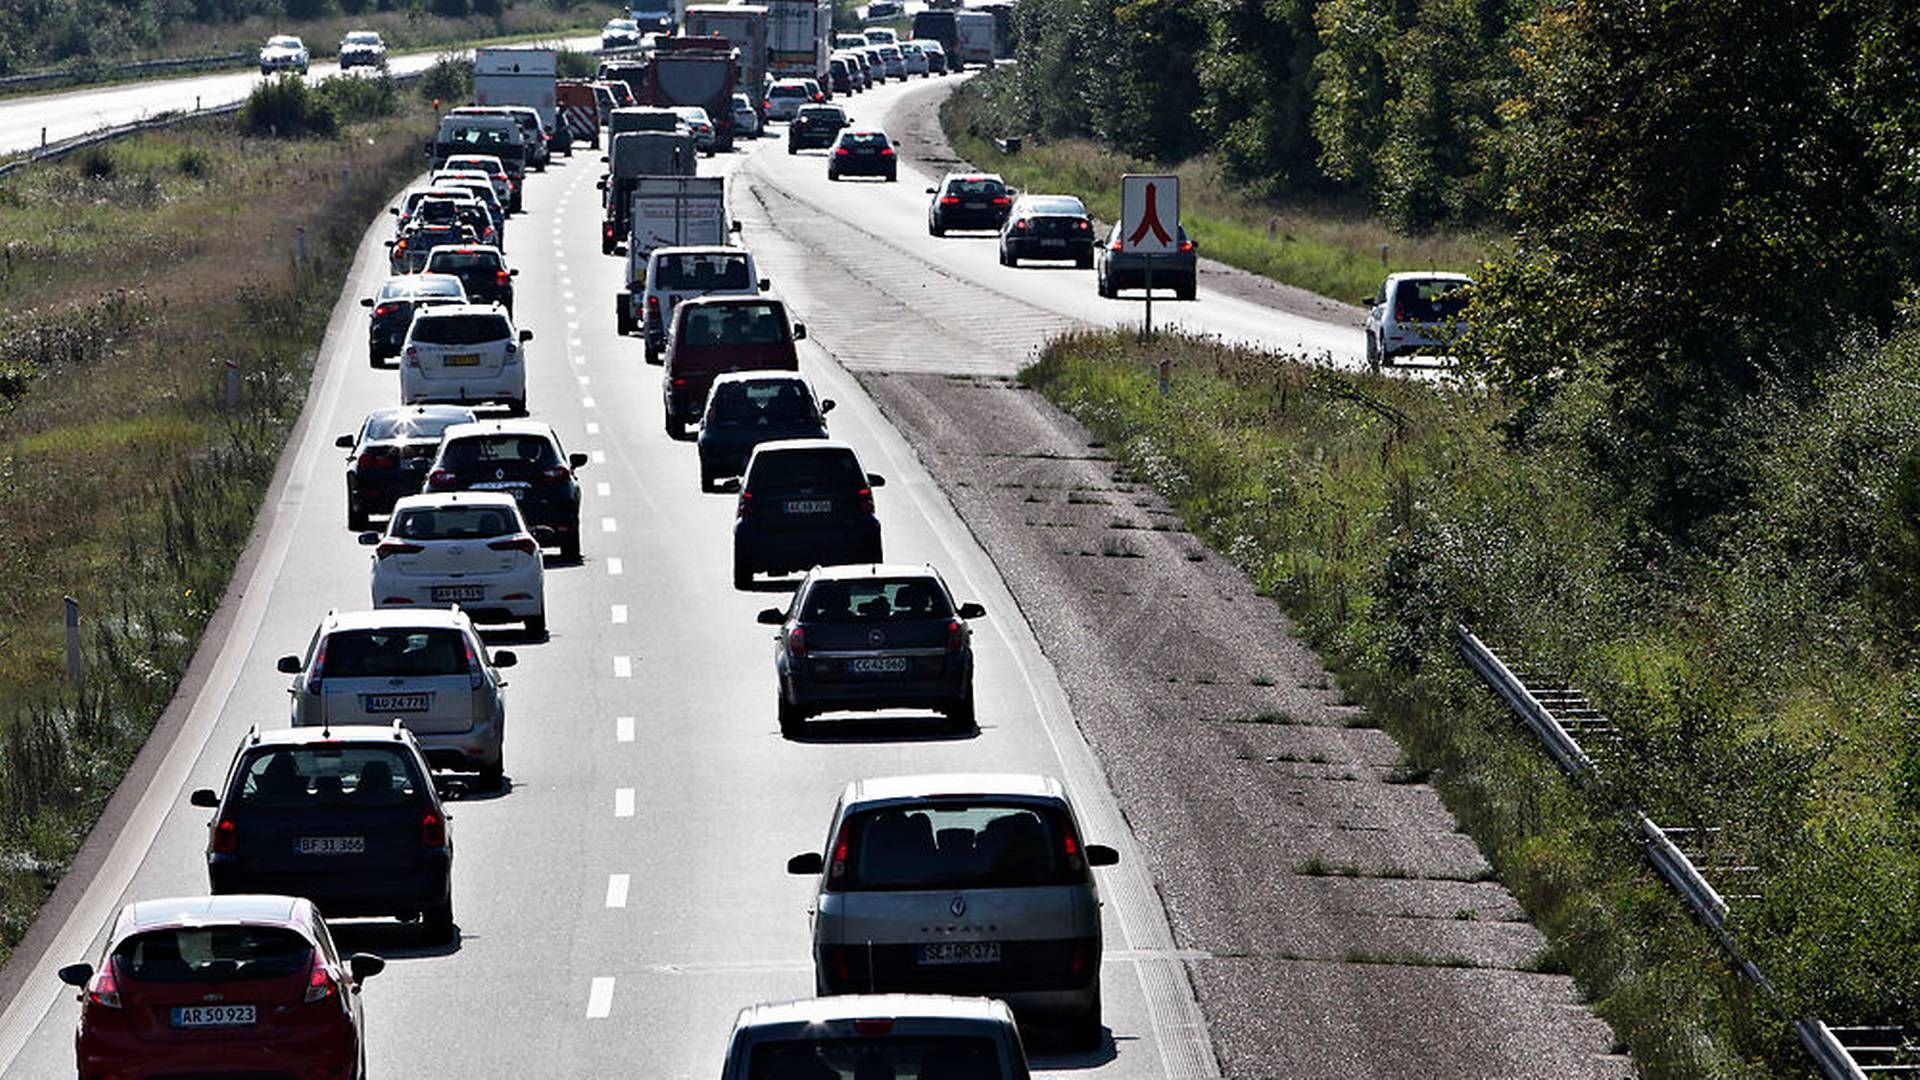 Regeringen vil udskyde planlagte stigninger i bilpriserne, skriver Berlingske. | Foto: Ritzau Scanpix/Tobias Nicolai